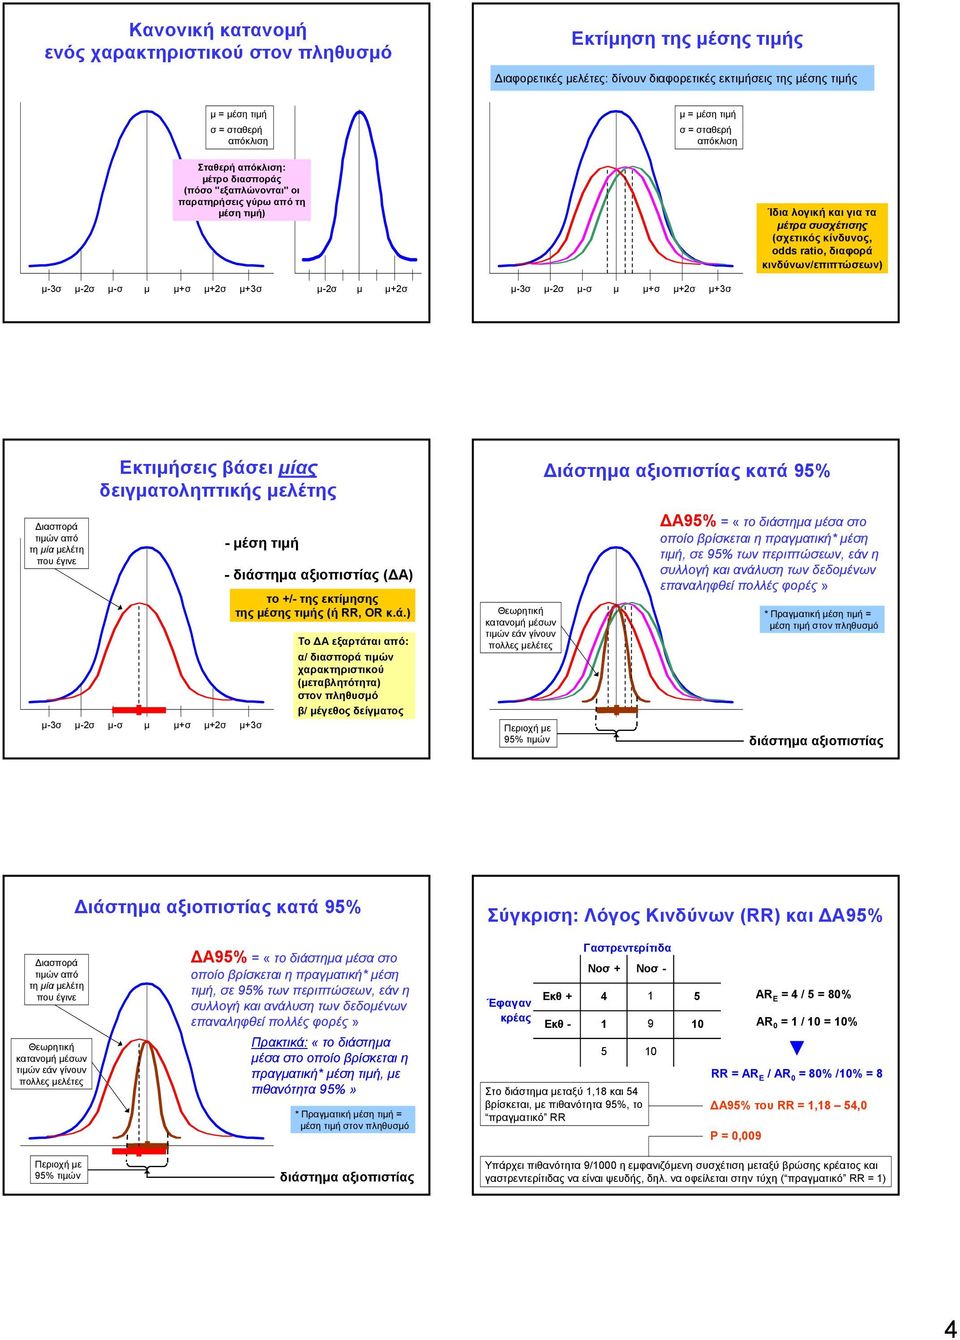 κινδύνων/επιπτώσεων) μ-3σ μ-2σ μ-σ μ μ+σ μ+2σ μ+3σ μ-2σ μ μ+2σ μ-3σ μ-2σ μ-σ μ μ+σ μ+2σ μ+3σ Διασπορά τιμών από τη μία μελέτη που έγινε Εκτιμήσεις βάσει μίας δειγματοληπτικής μελέτης - μέση τιμή μ-3σ